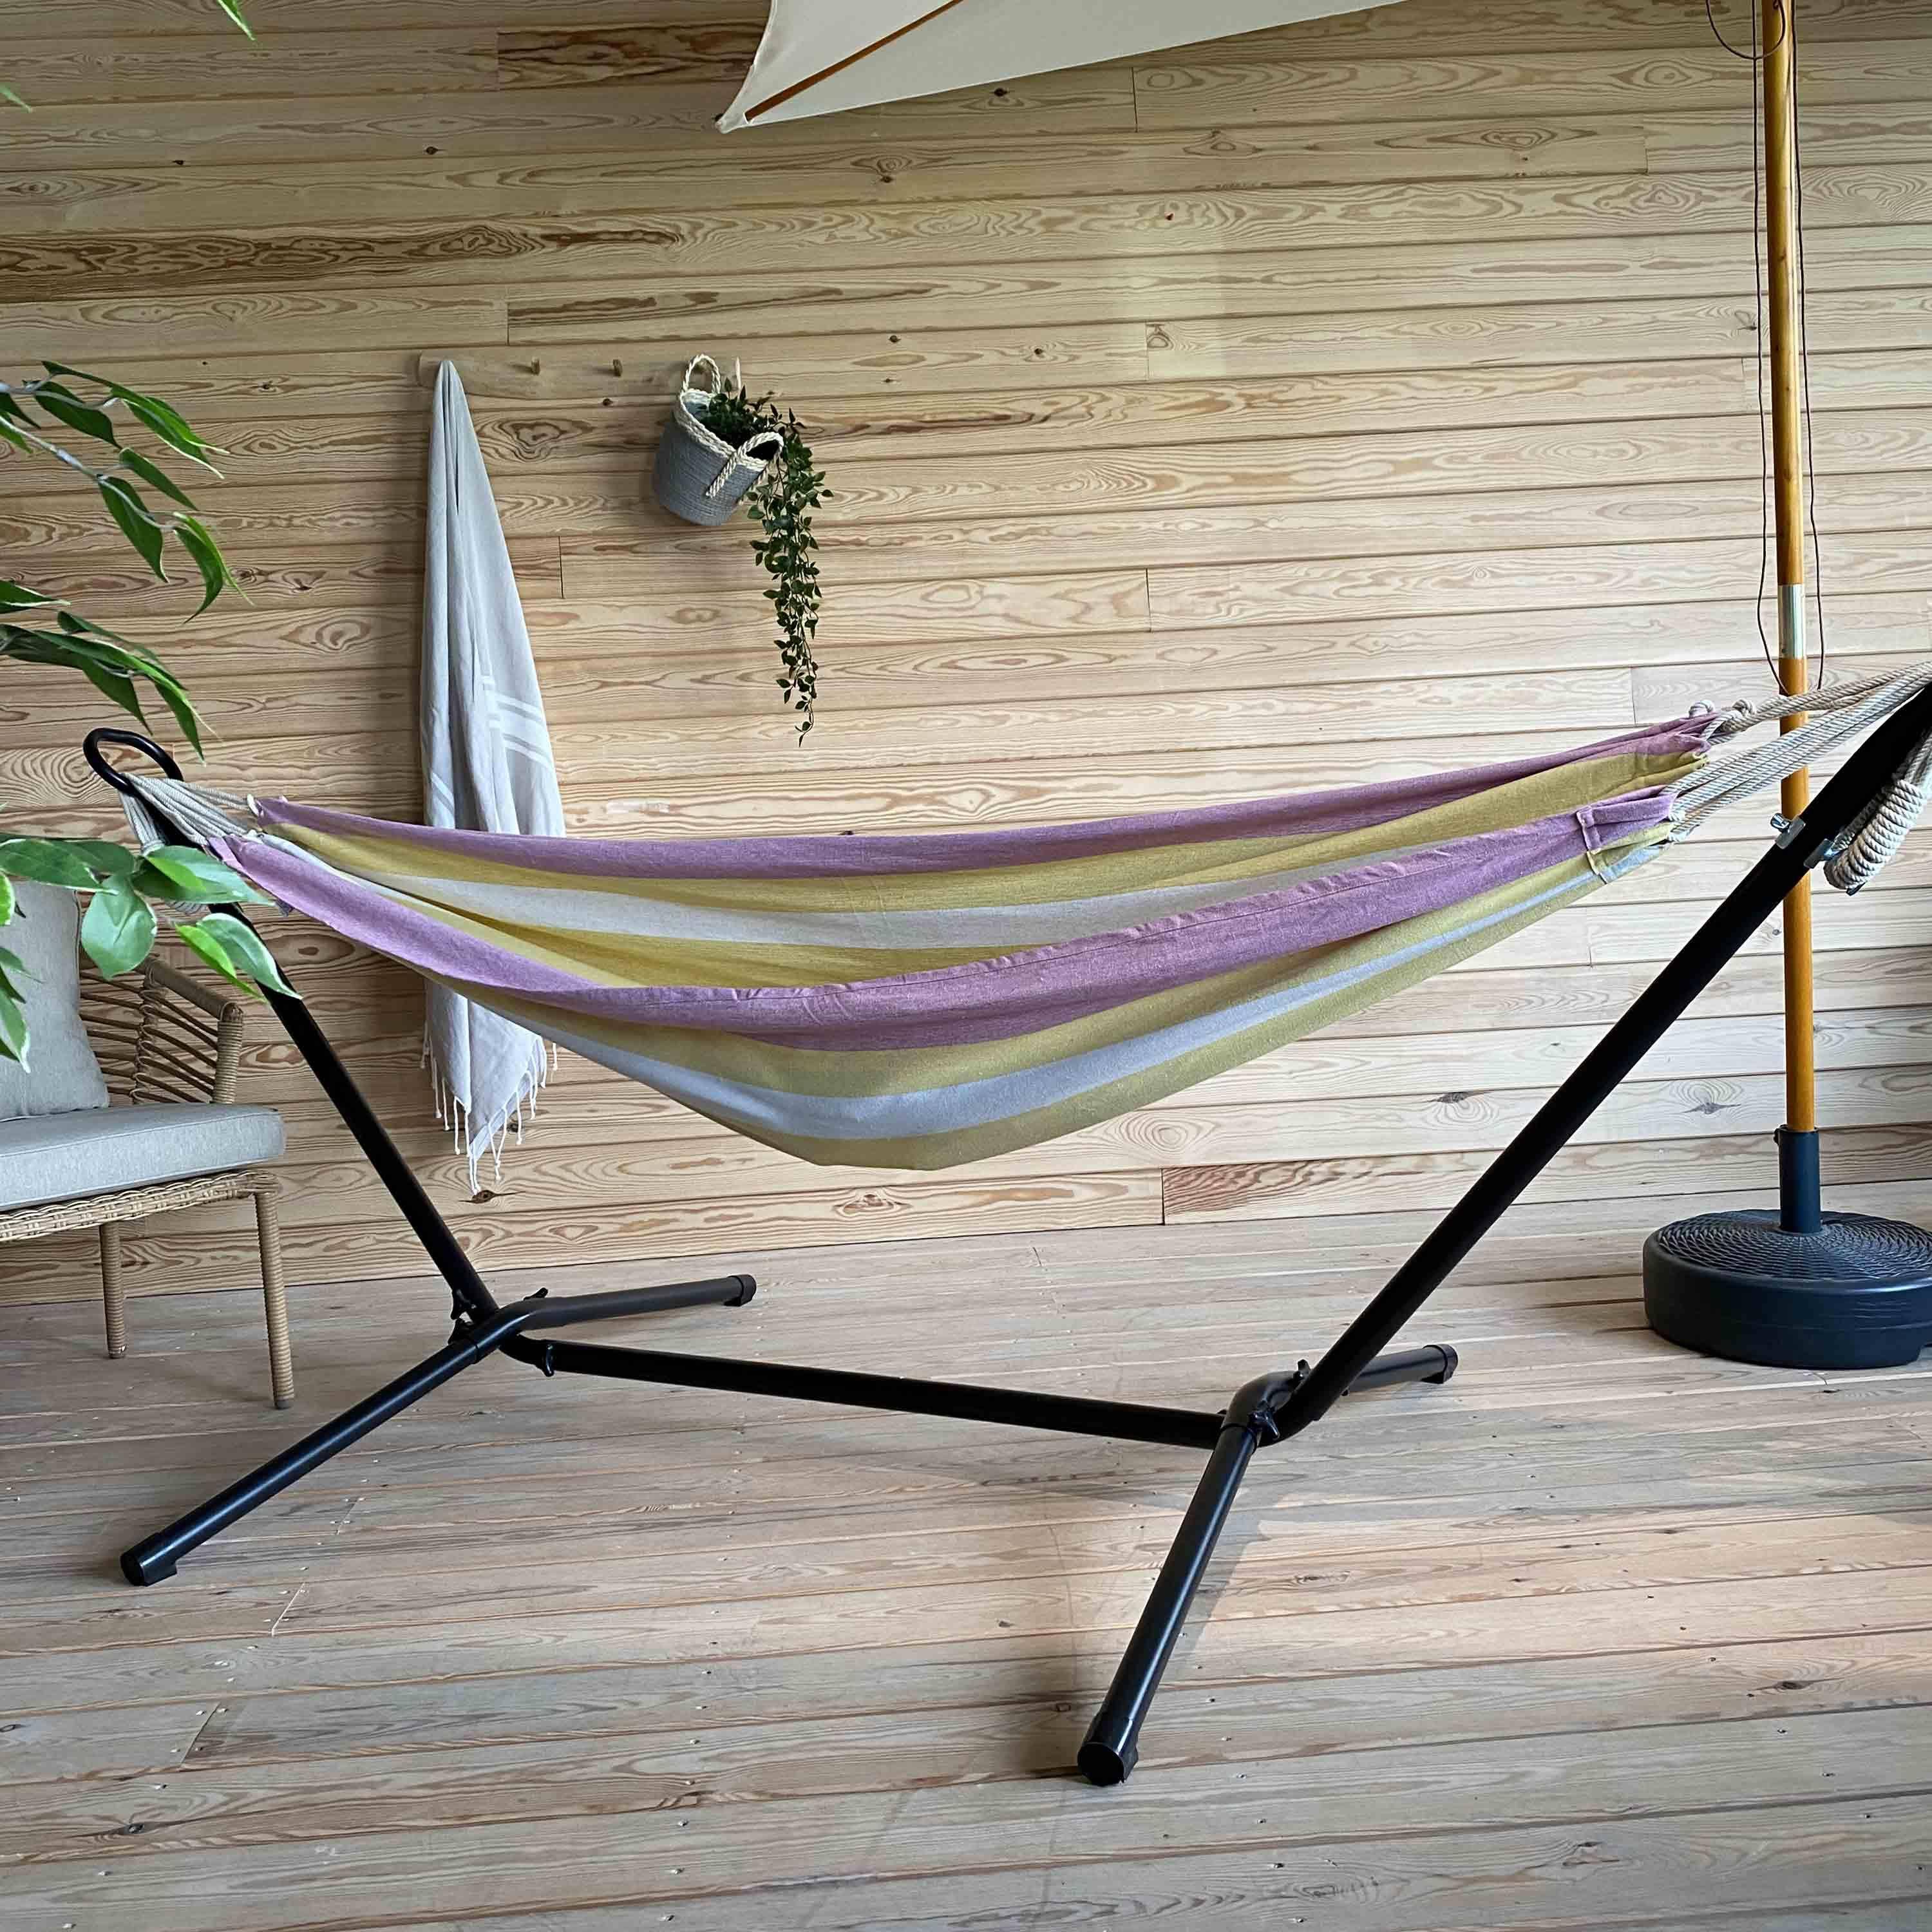 Hangmat voor 1 persoon, 110x220cm, met touwen en karabijnhaken, met standaard, geel en roze gestreept Photo4